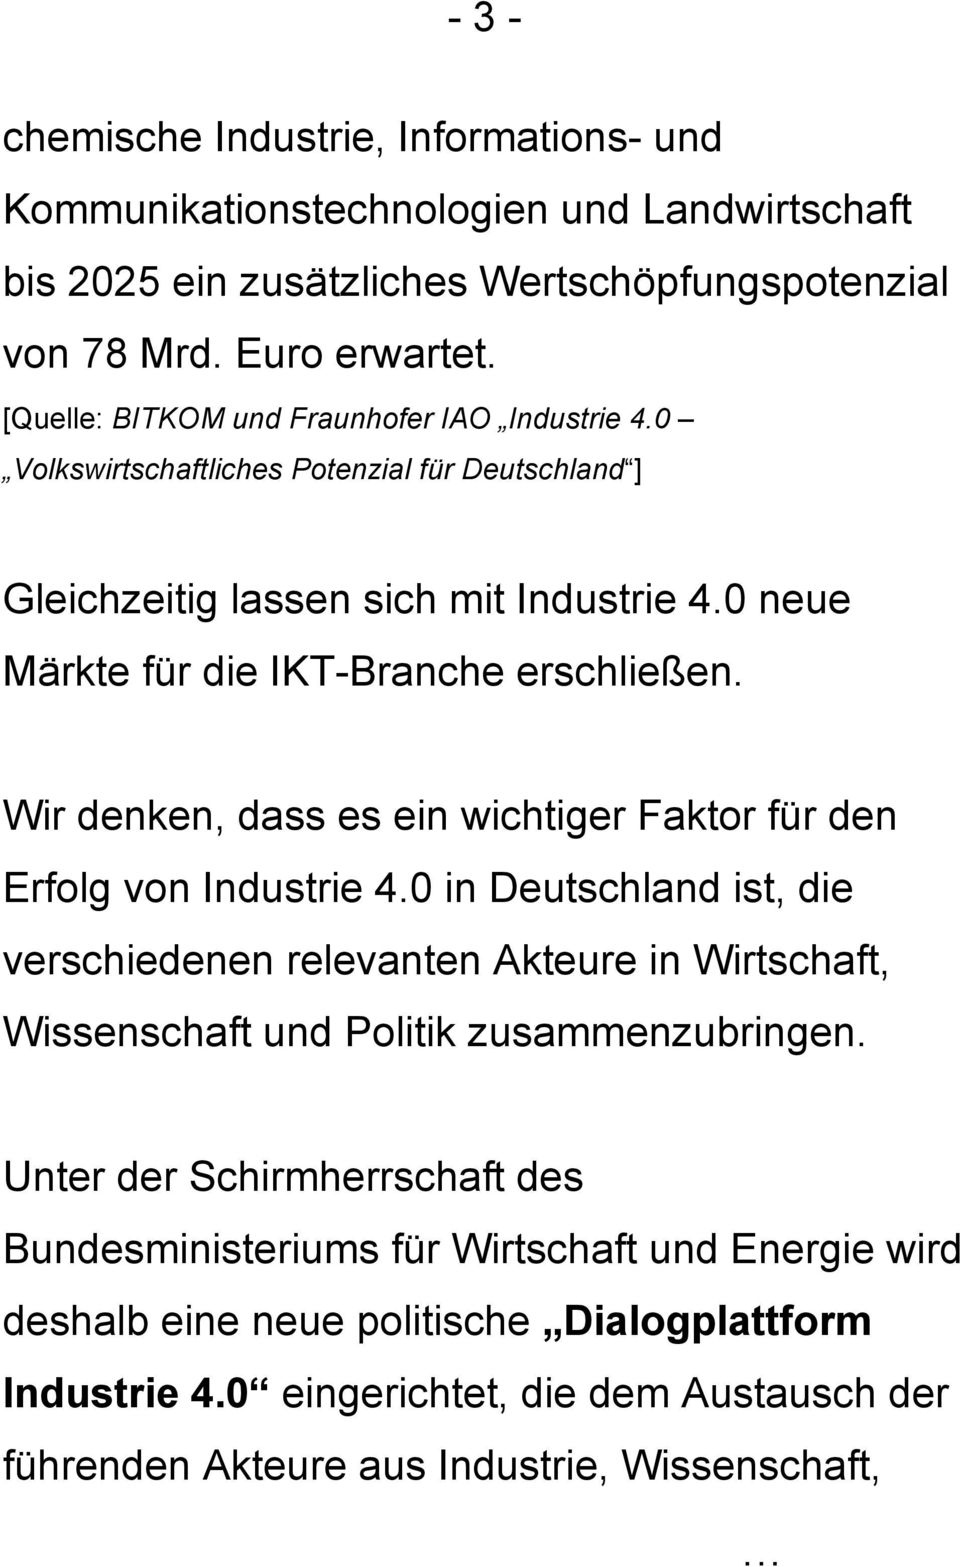 Wir denken, dass es ein wichtiger Faktor für den Erfolg von Industrie 4.0 in Deutschland ist, die verschiedenen relevanten Akteure in Wirtschaft, Wissenschaft und Politik zusammenzubringen.